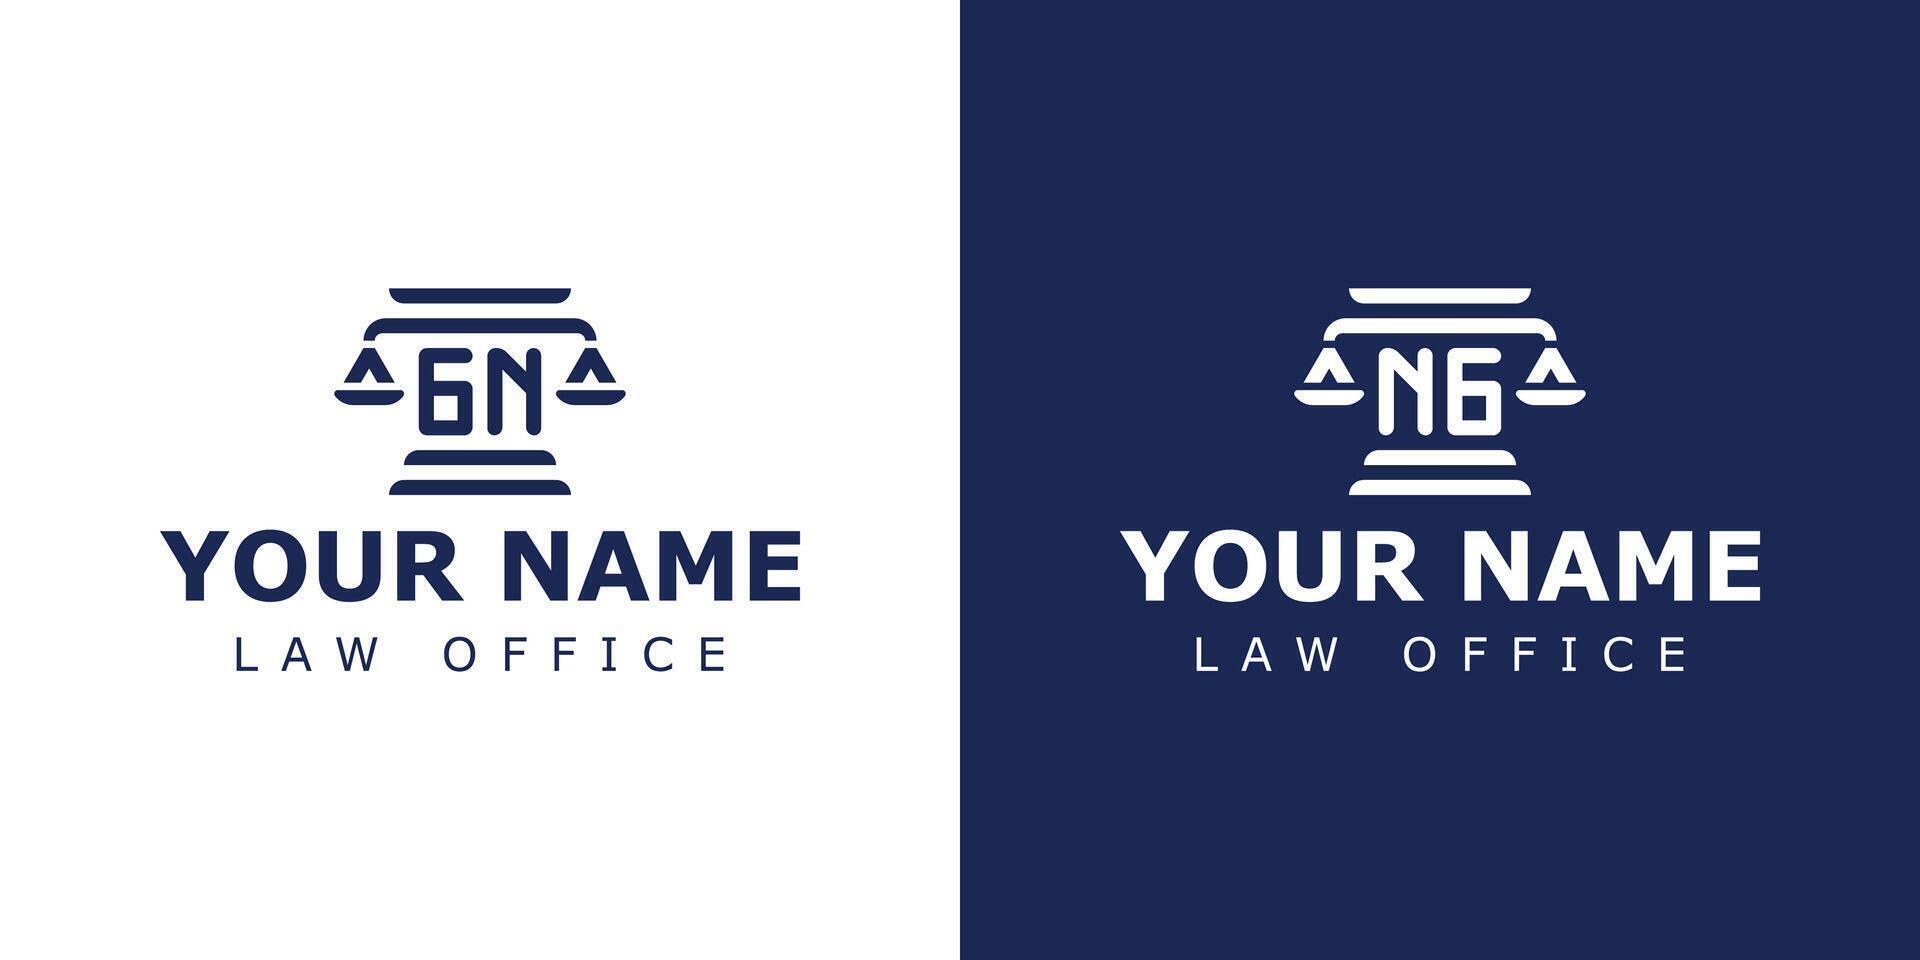 Briefe gn und ng legal Logo, geeignet zum Rechtsanwalt, legal, oder Gerechtigkeit mit gn oder ng Initialen vektor